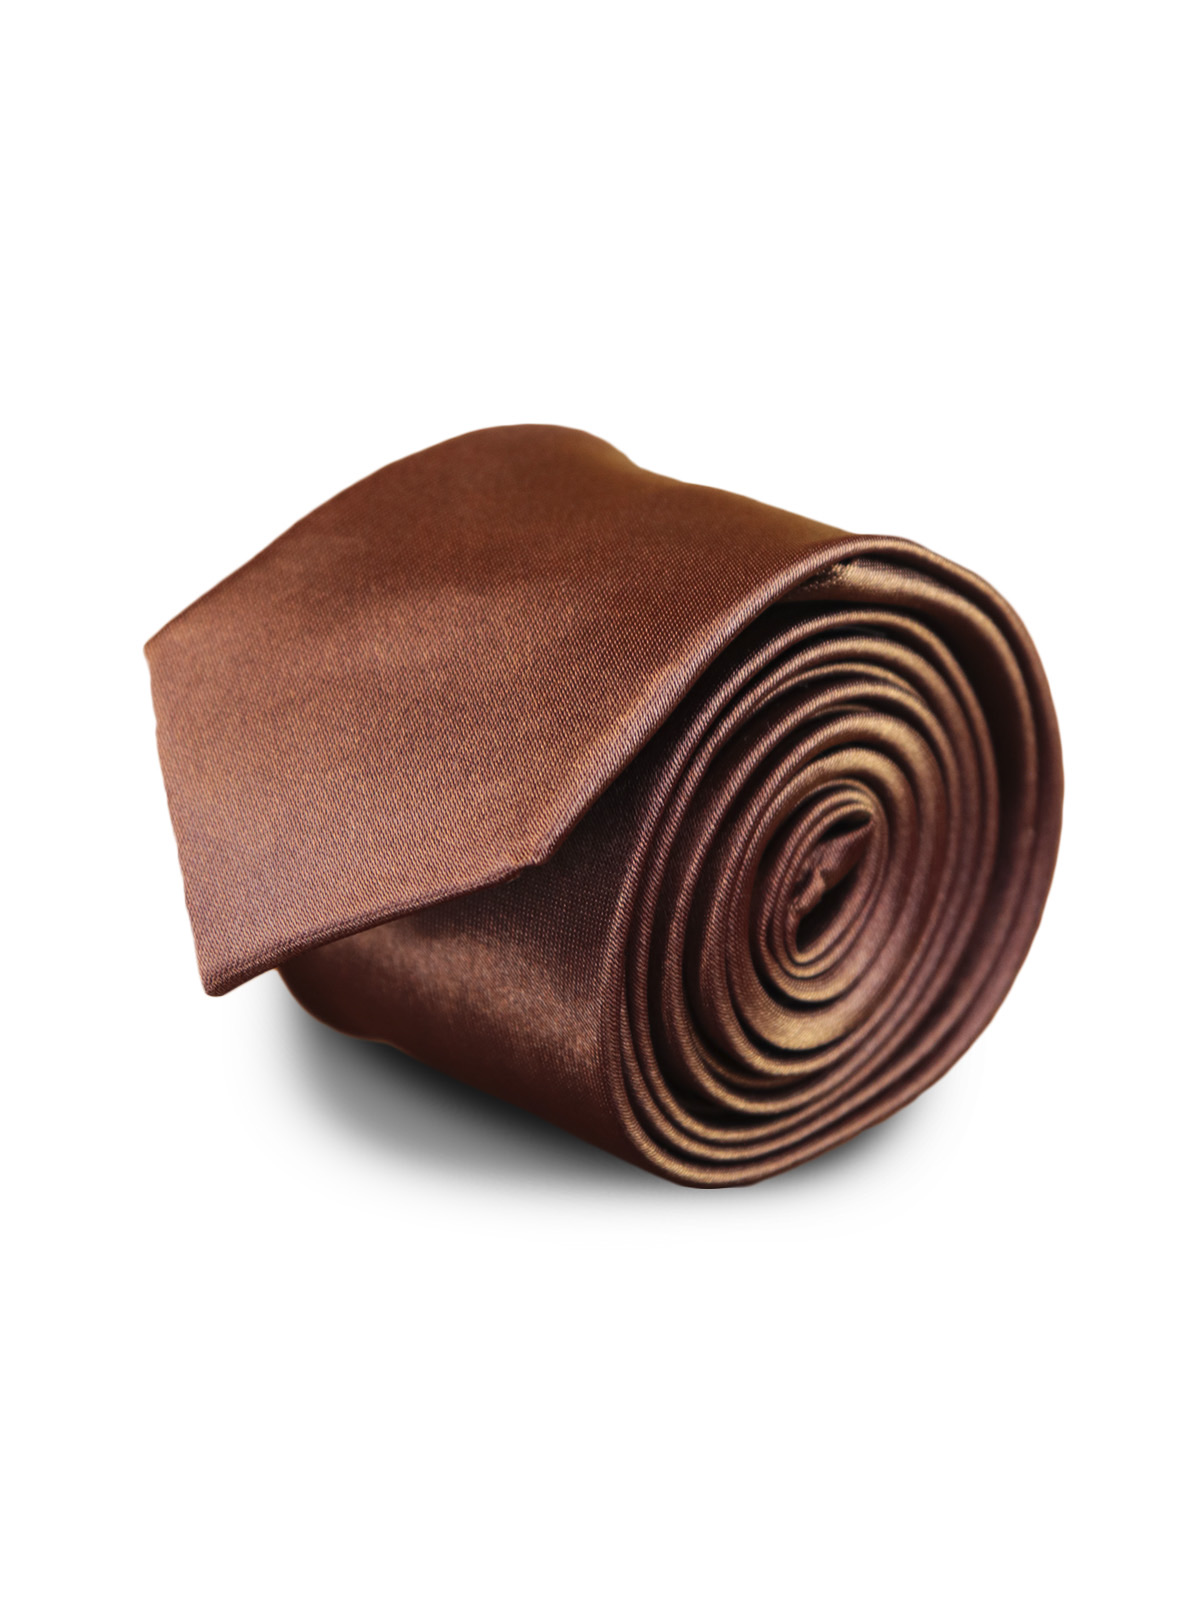 Галстук узкий атласный шоколад описание: Фасон - Узкий галстук, Материал - Полиэстер, Цвет - коричневый, Размер - 5 см х 141 см, Страна производства - Китай.